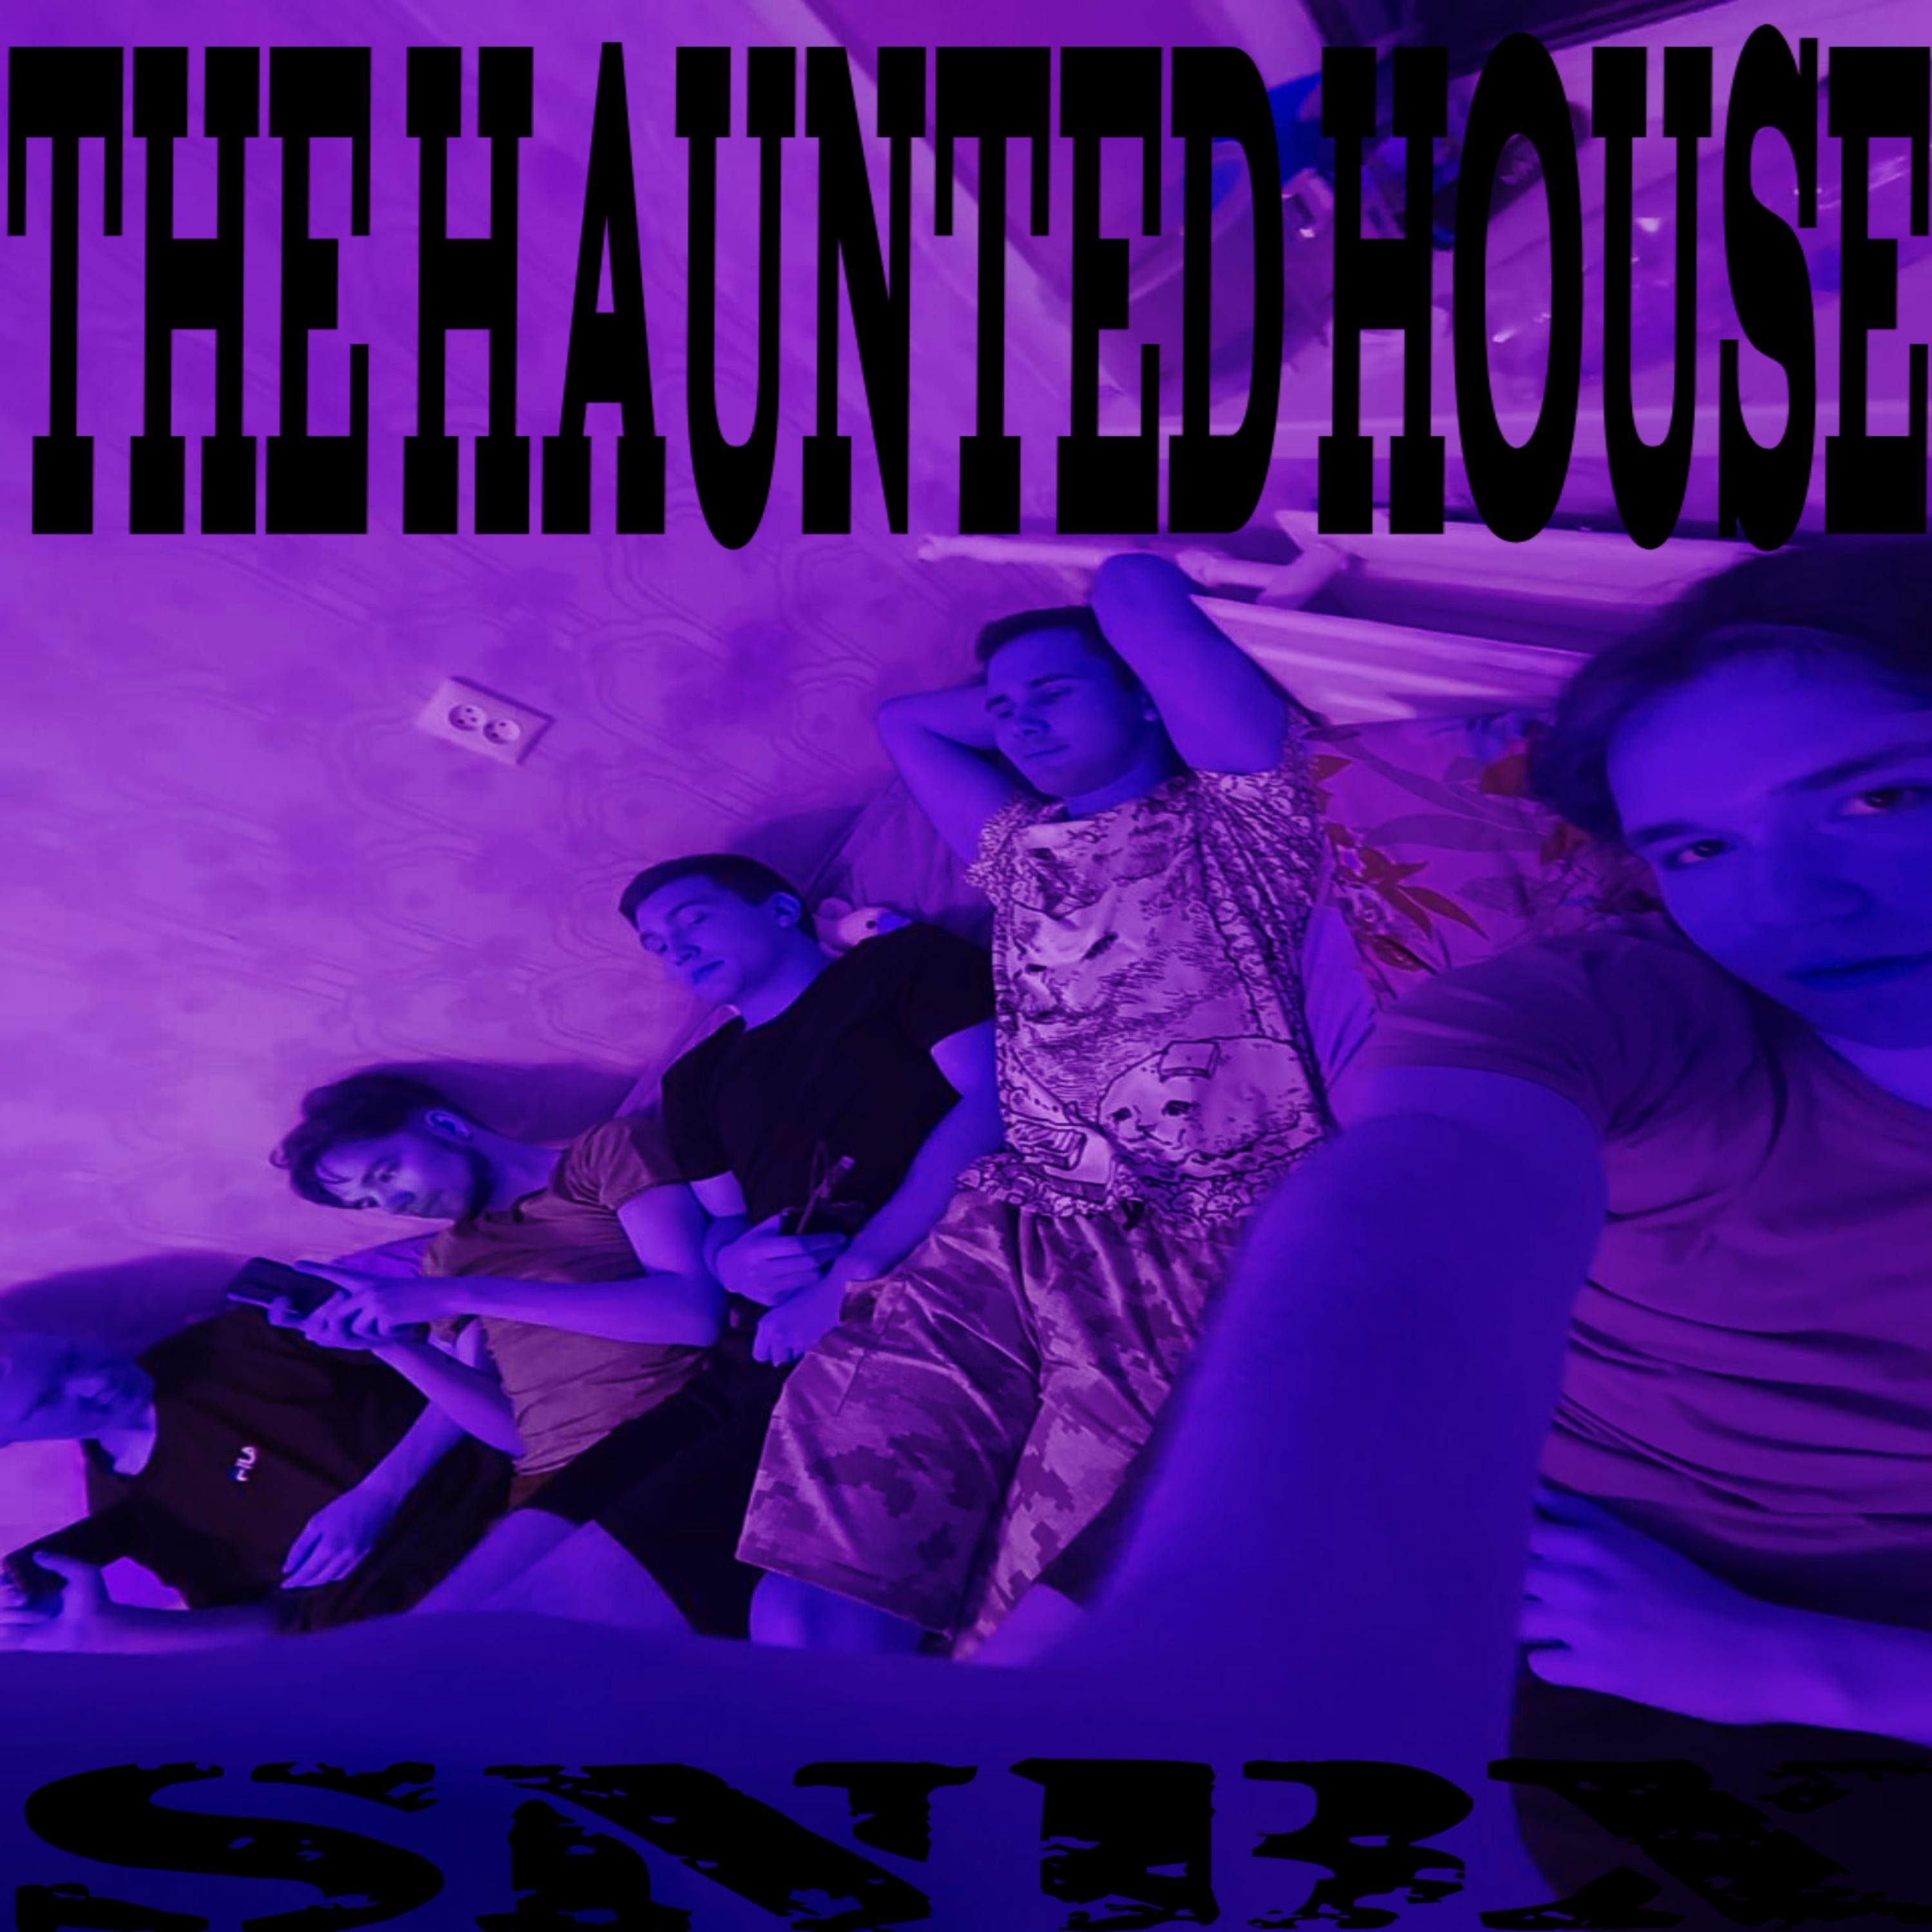 Постер альбома The Haunted House